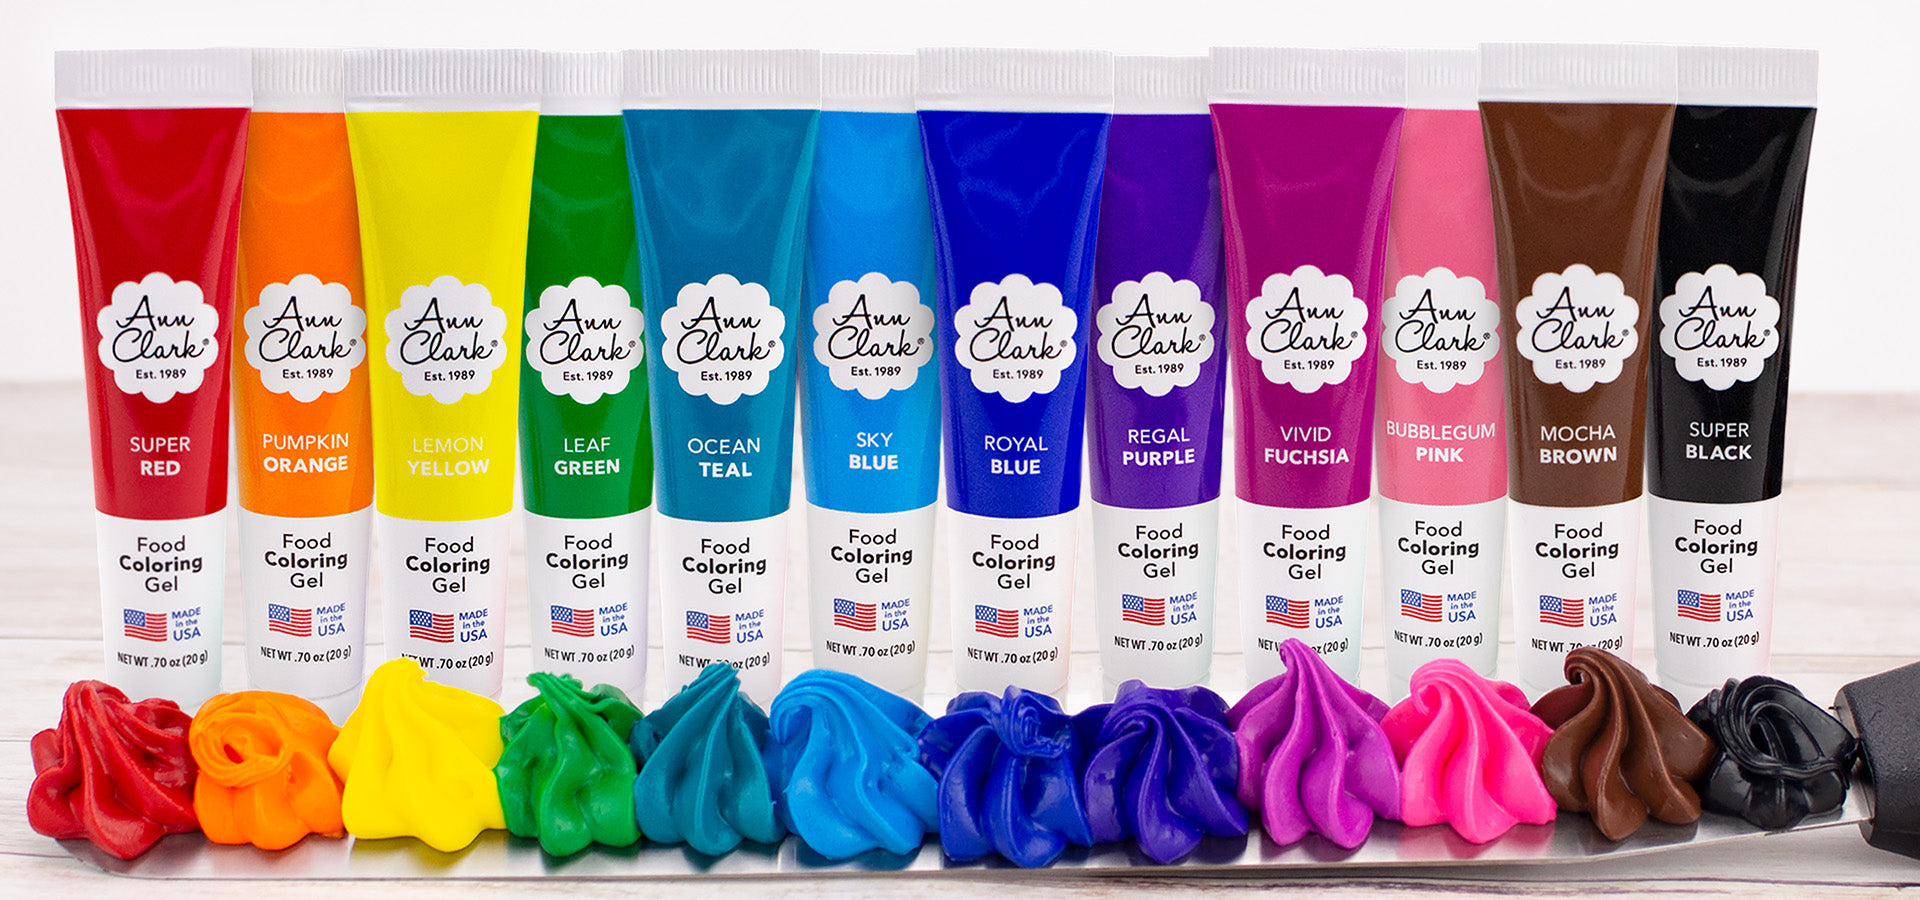 Lineup of Ann Clark Food Coloring Gels